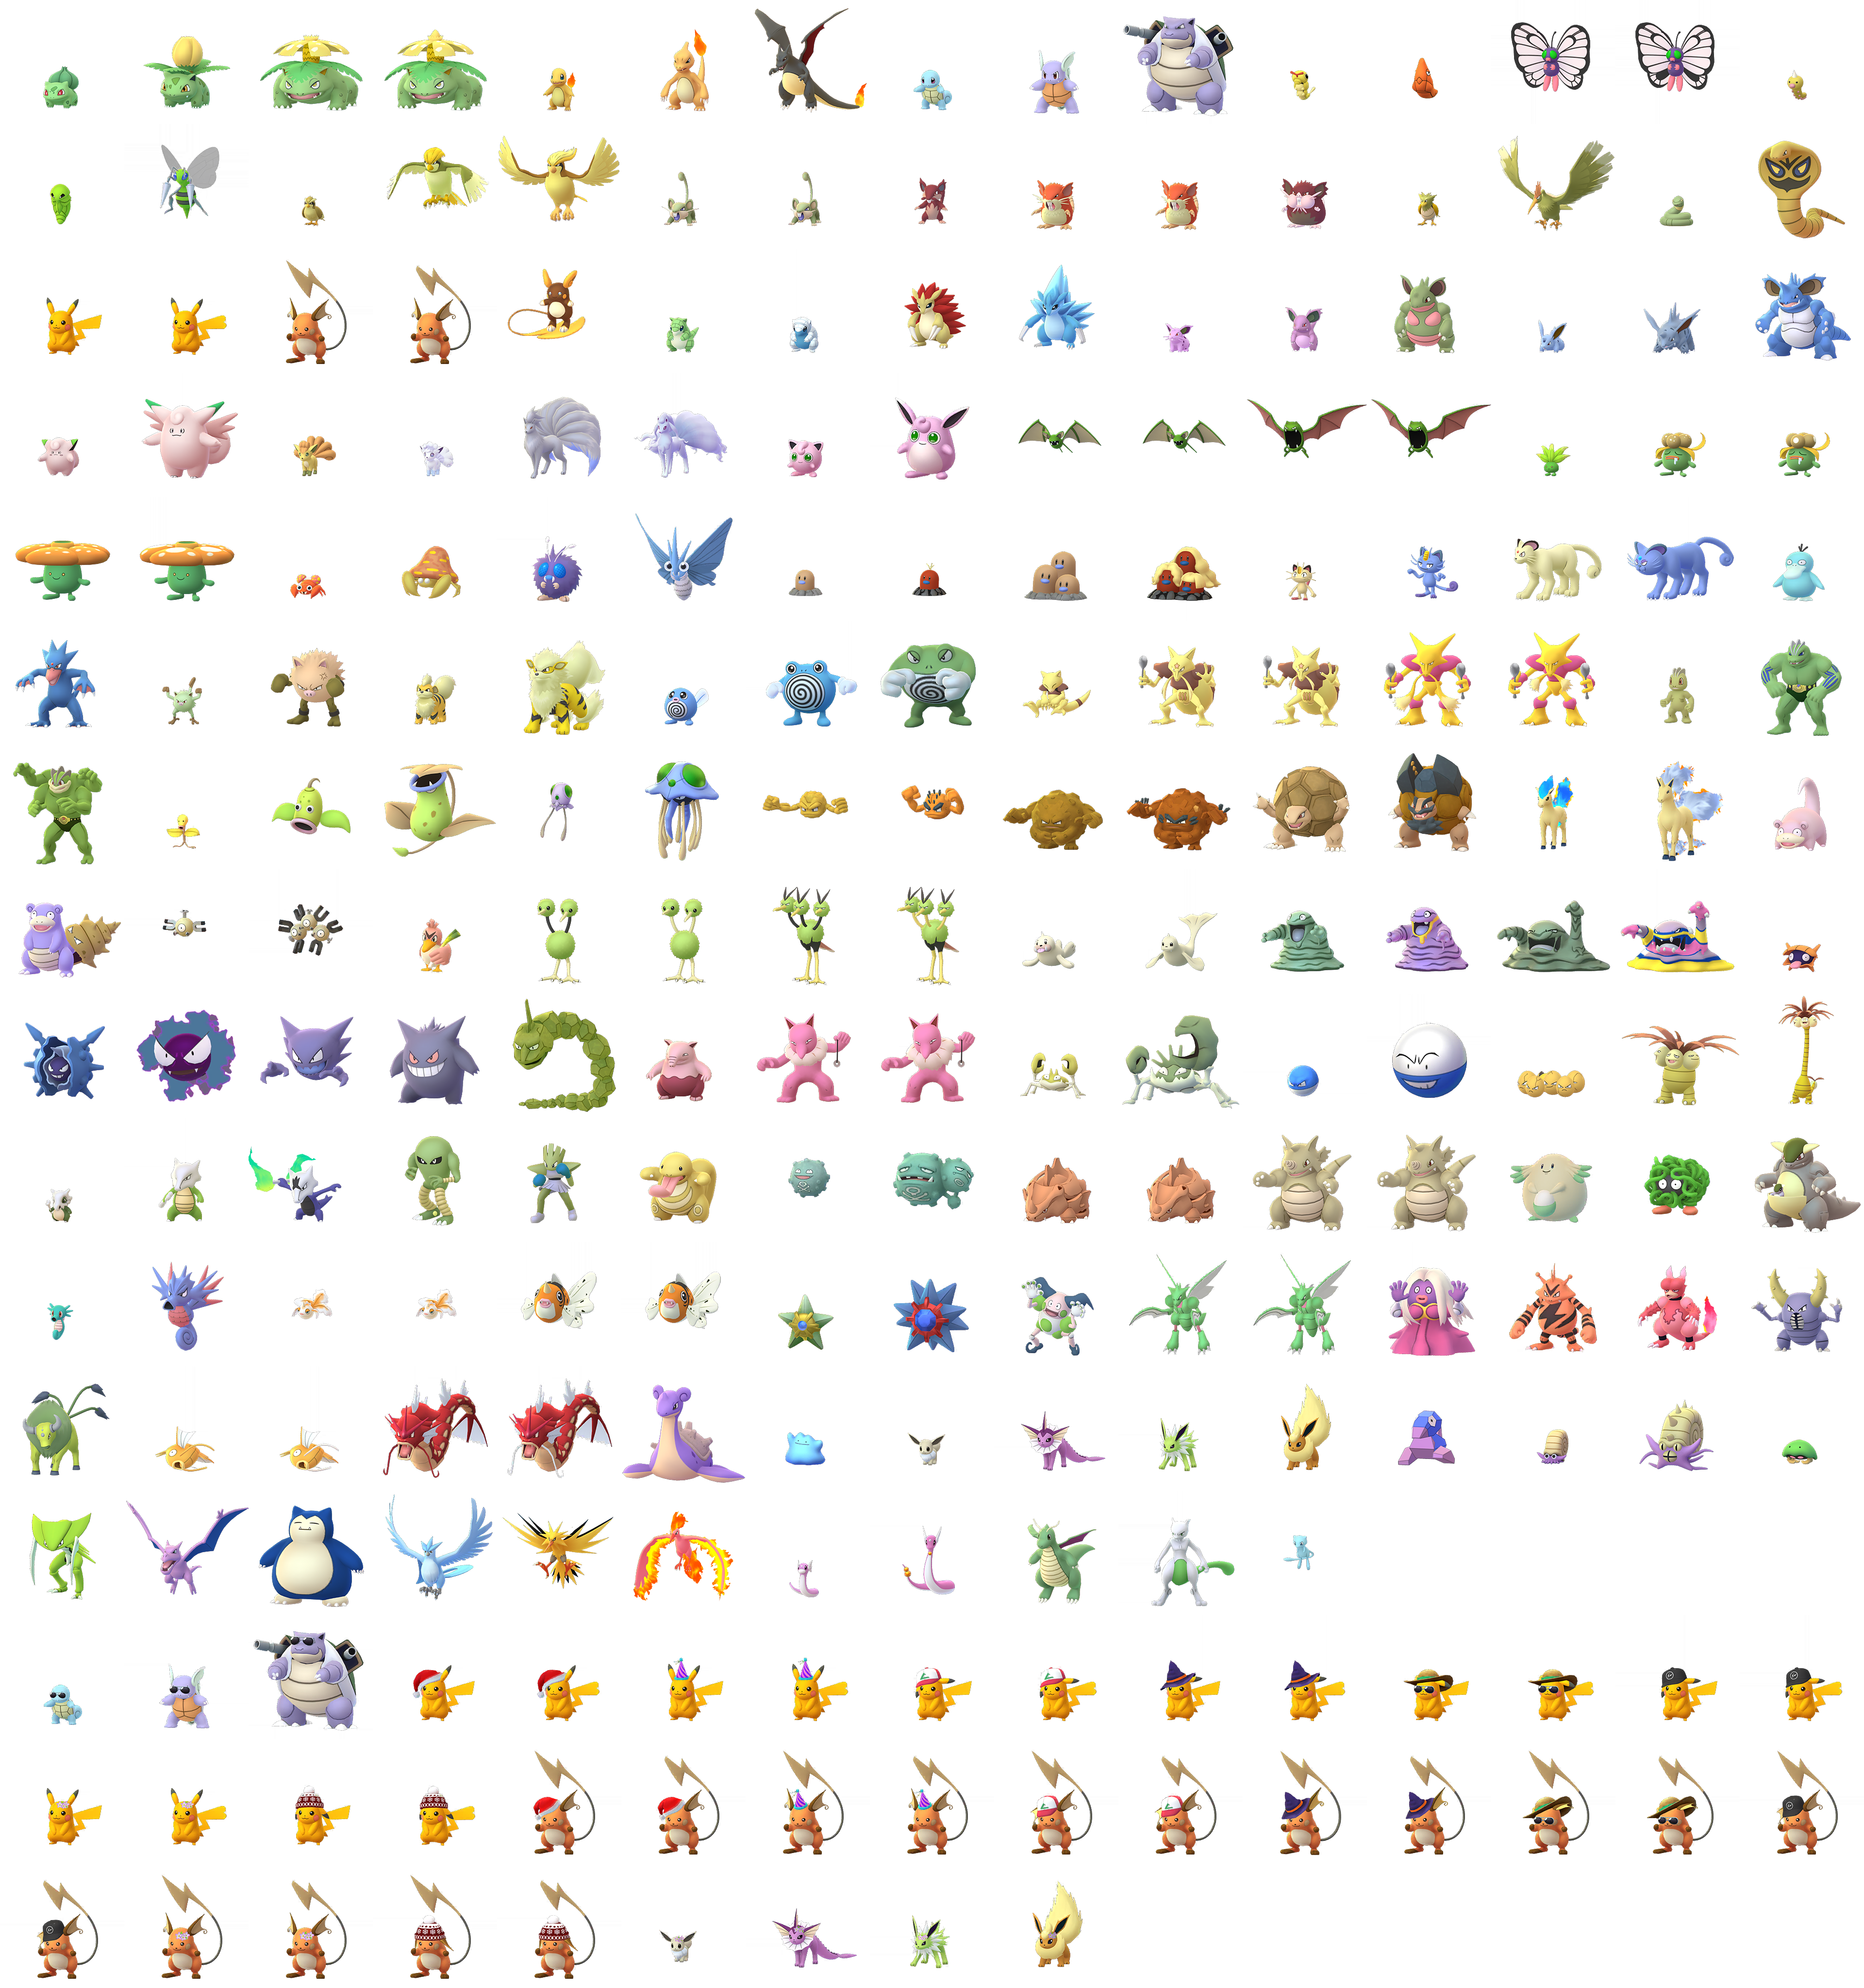 Pokémon GO - Pokémon (1st Generation, Shiny)